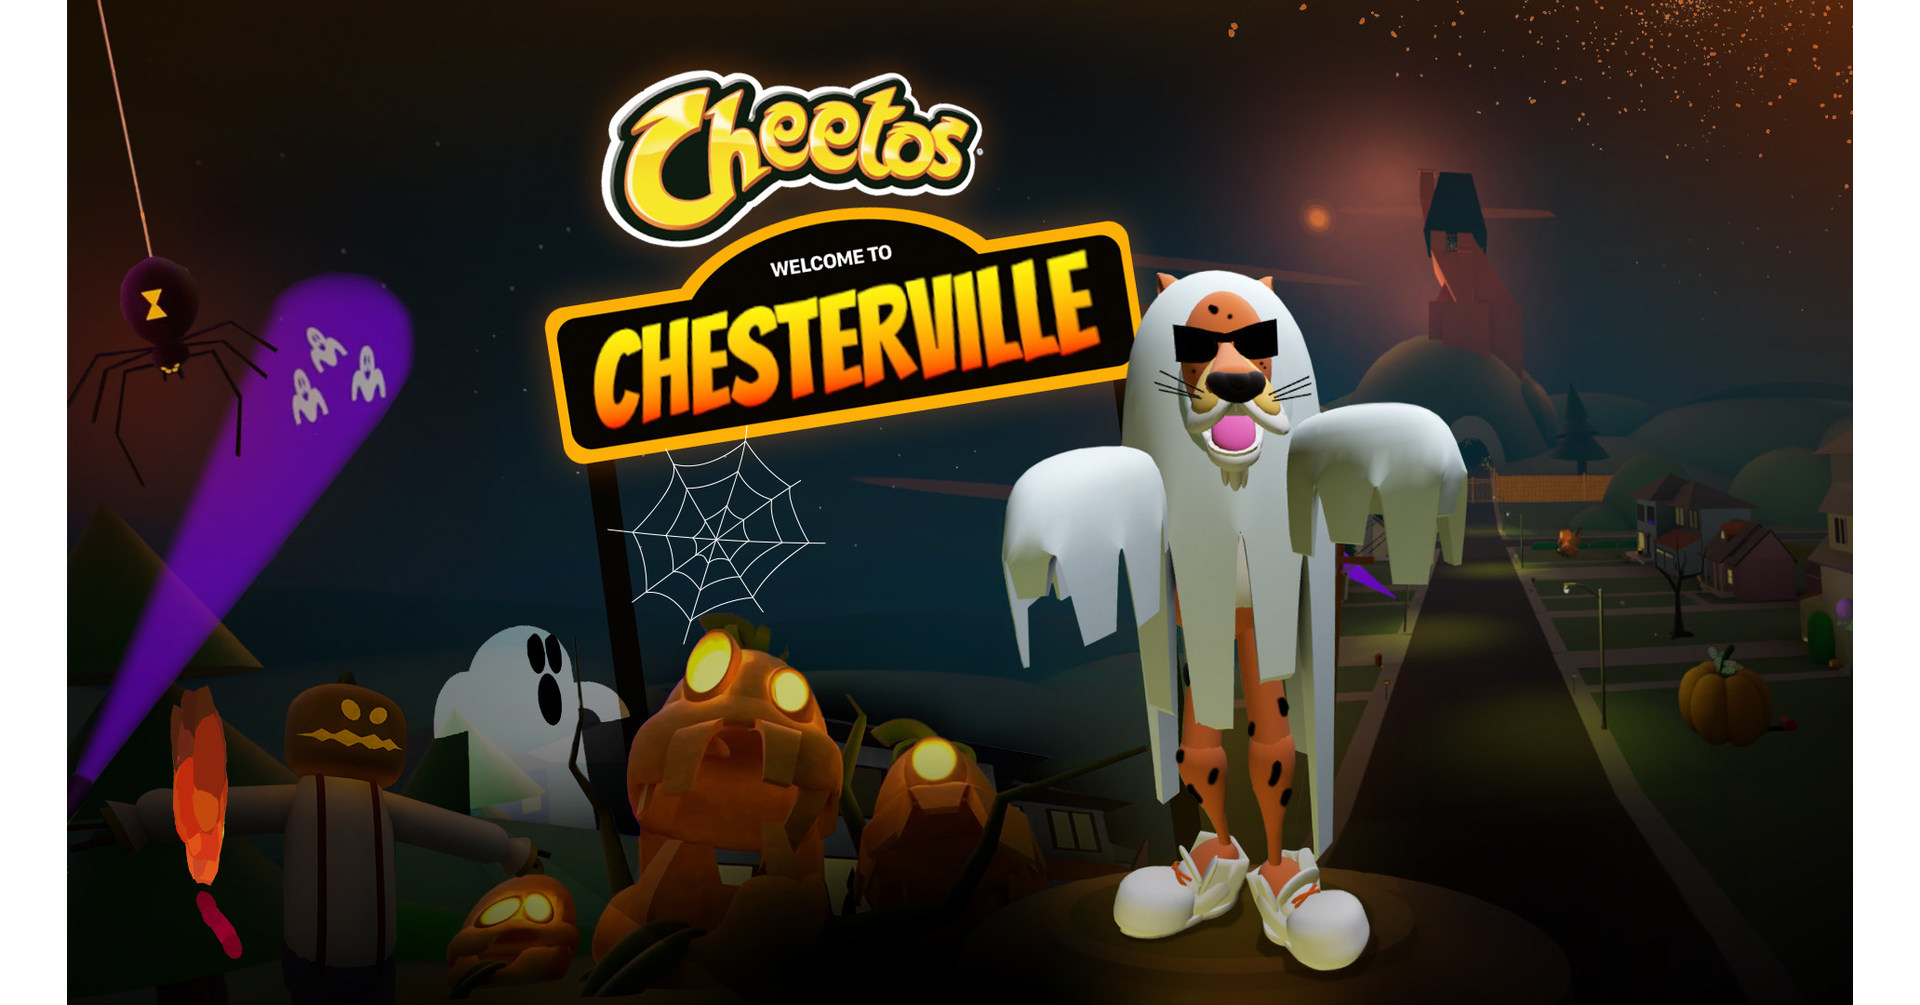 Cheetos has an Online Store, and We got a Sneak Peek